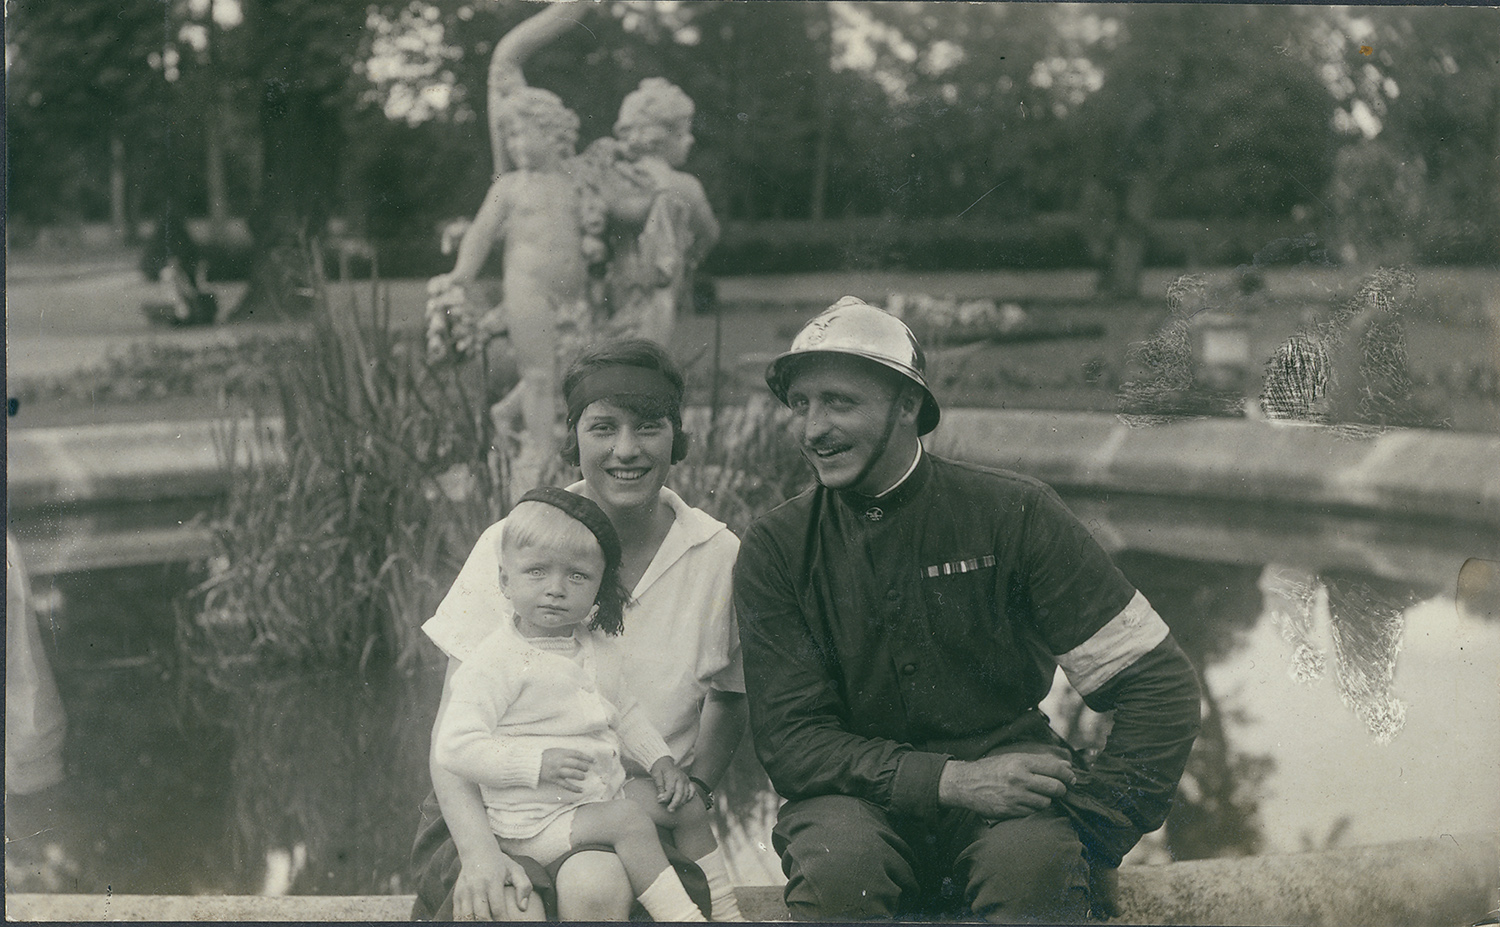 1.	Fotografia archiwalna z lat 30. XX wieku przedstawia Jadwigę i Aleksandra Zamoyskich z synem Adamem, siedzących na brzegu fontanny w parku kozłowieckim. Uśmiechnięta młoda kobieta w białej sukience i z czarną opaską we włosach. Trzyma na kolanach kilkuletniego chłopca w białym ubranku, białych skarpetkach i ciemnym nakryciu głowy. Po jej prawej stronie uśmiechnięty mężczyzna w ciemnym stroju i błyszczącym hełmie. W tle fontanna z rzeźbą – dwa amorki stojące tyłem do siebie. W głębi park. Fotografia czarno-biała.